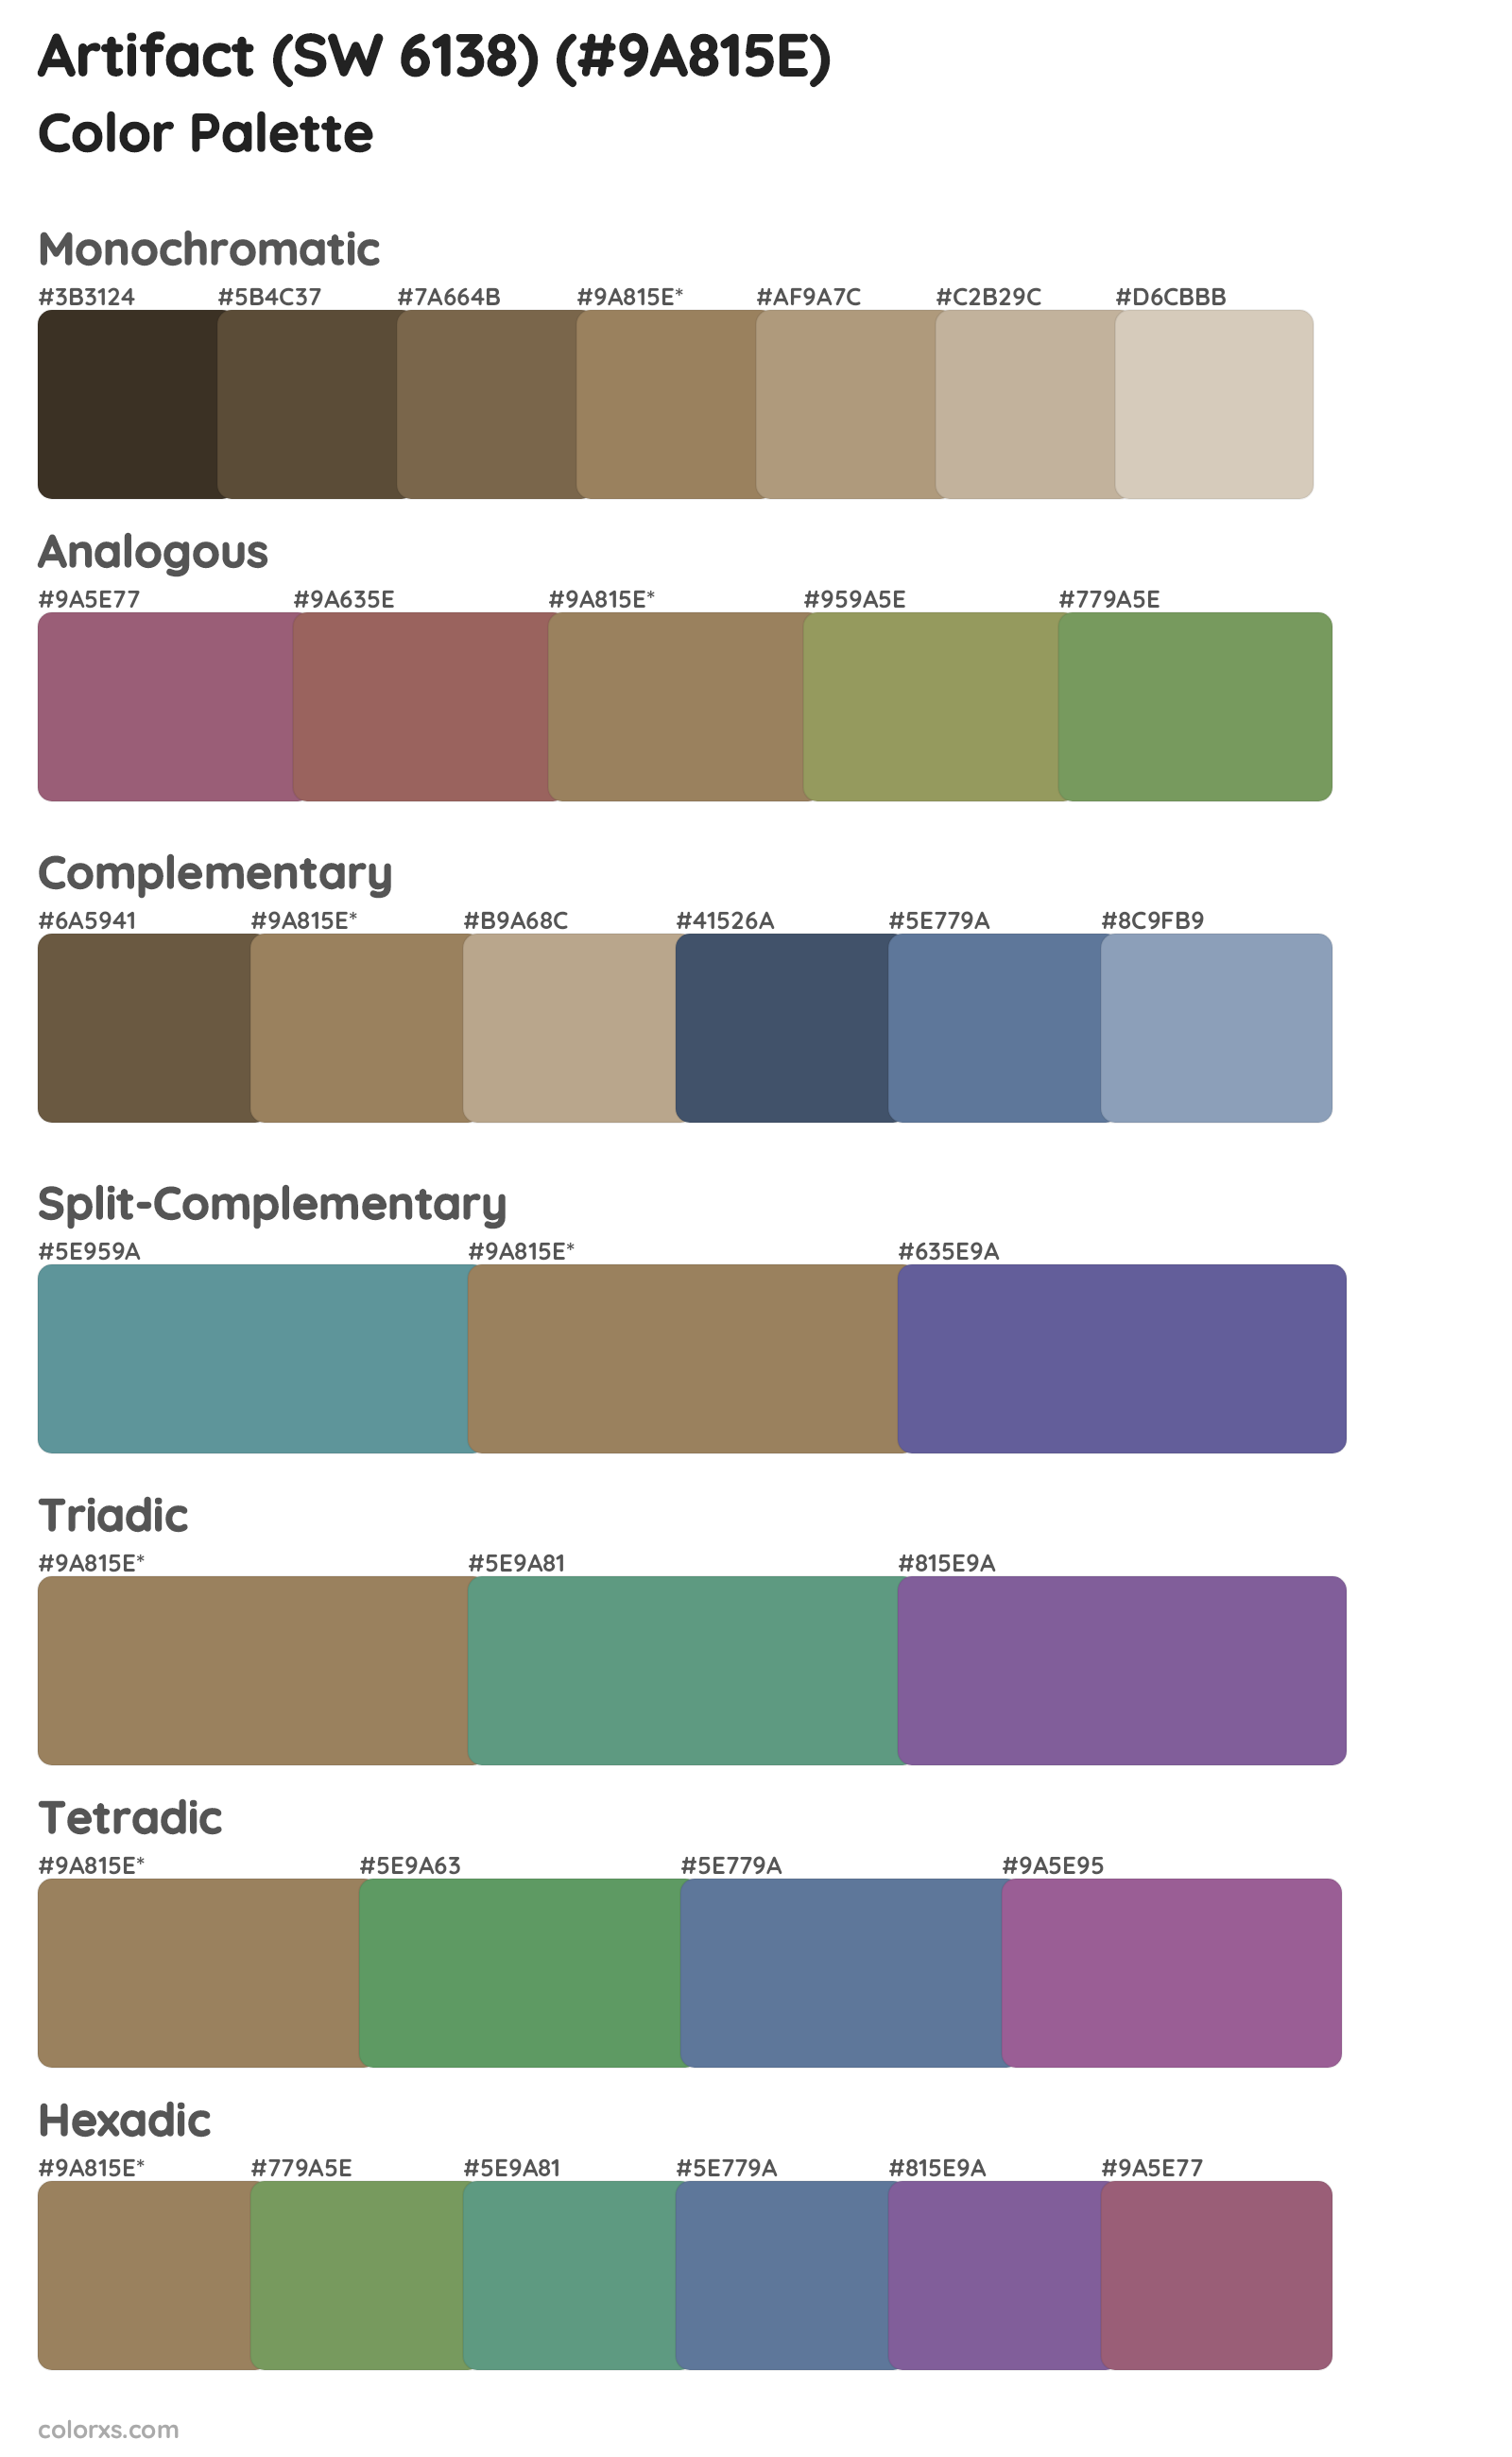 Artifact (SW 6138) Color Scheme Palettes